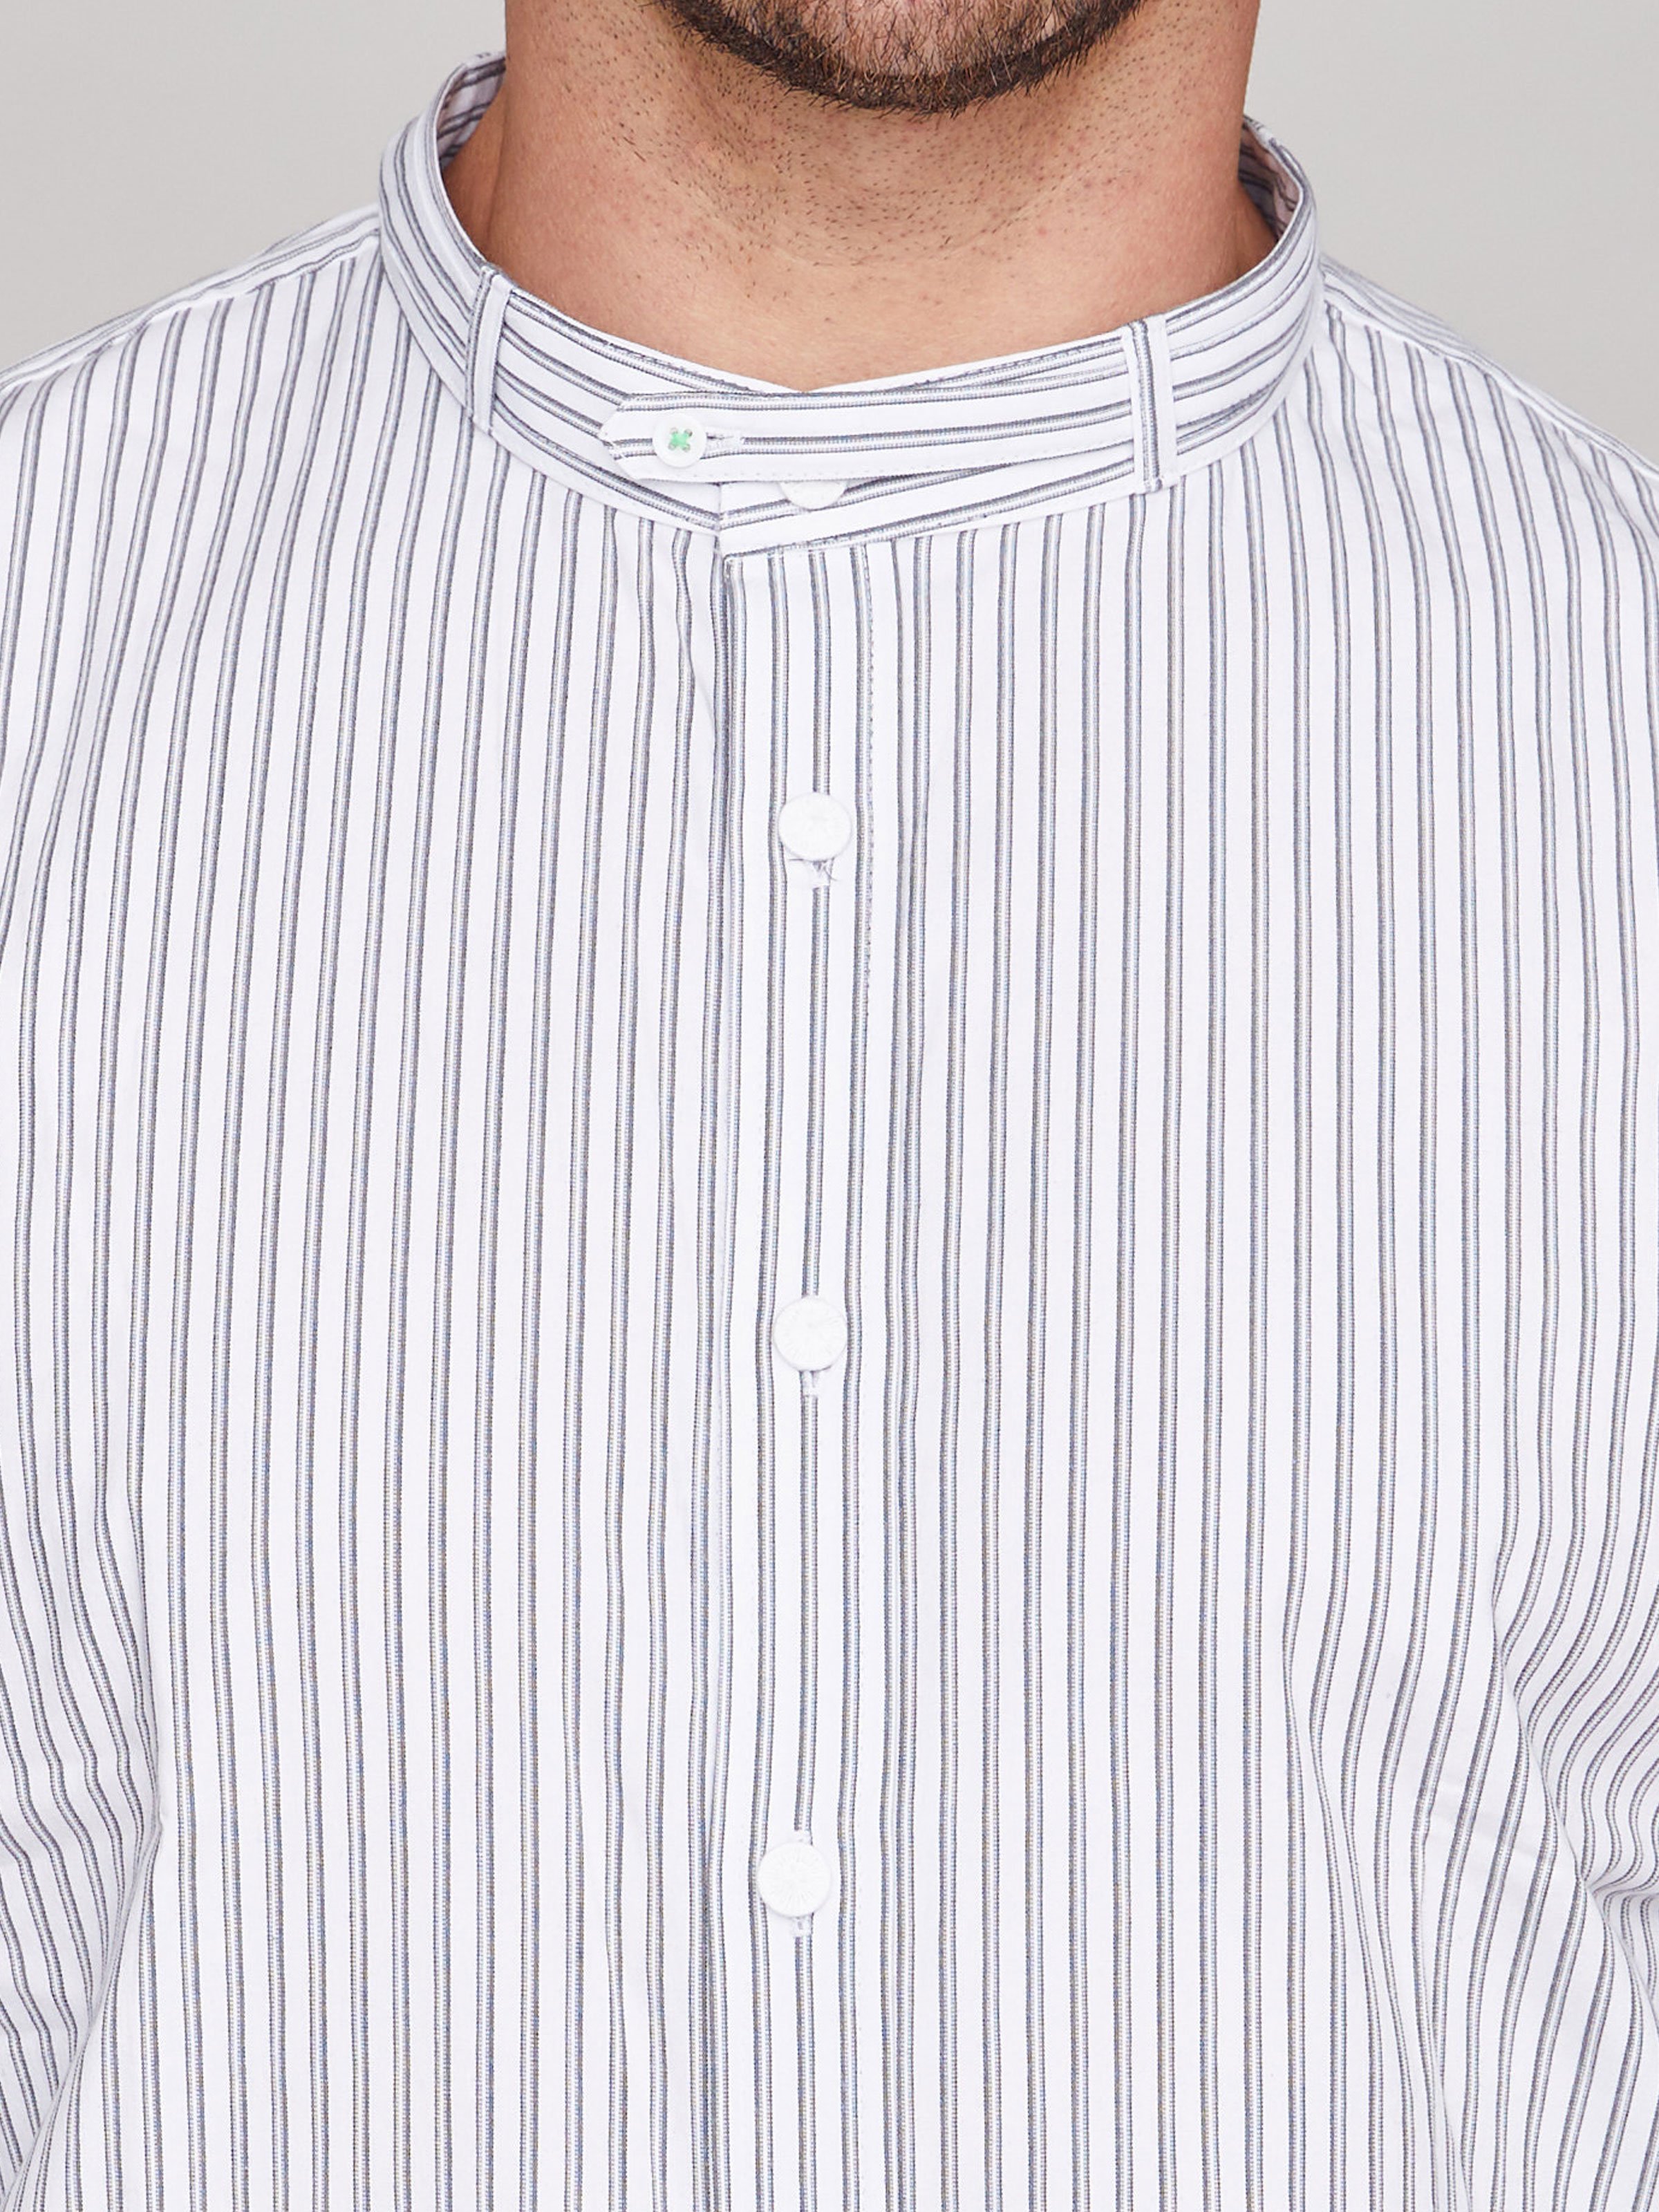 Weißes Trachtenhemd mit grauen Streifen